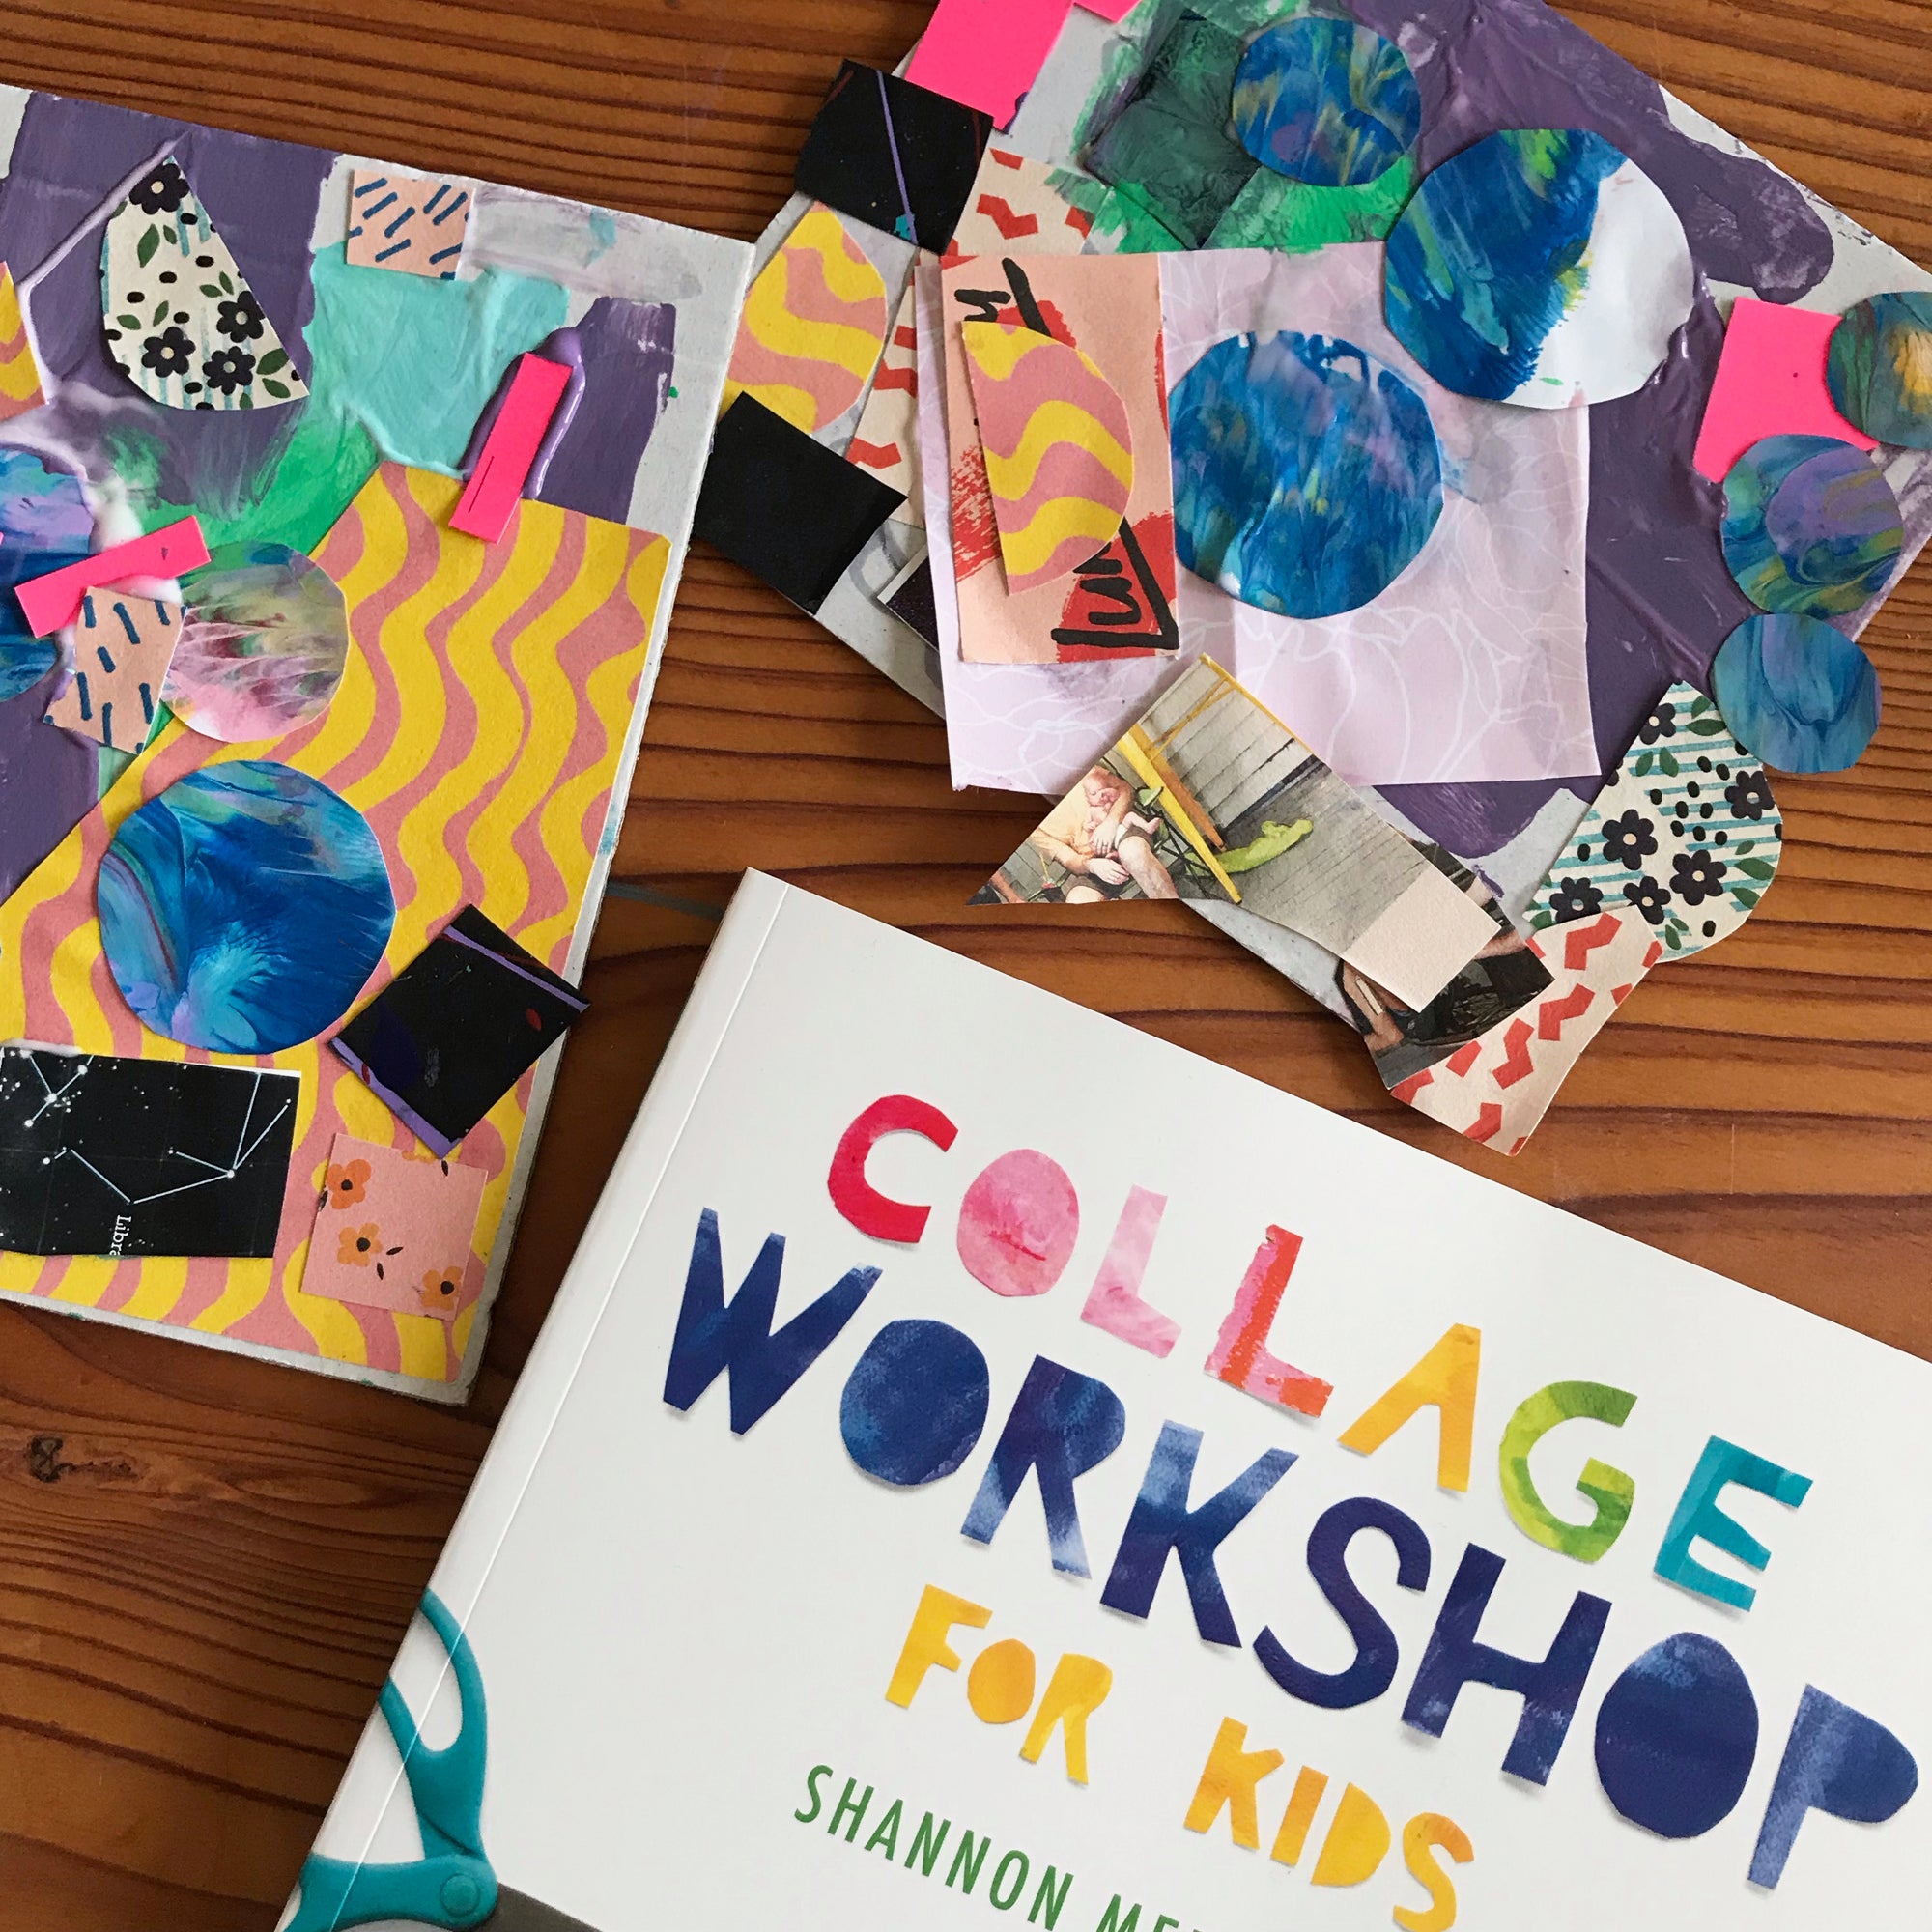 Collage Workshop For Kids